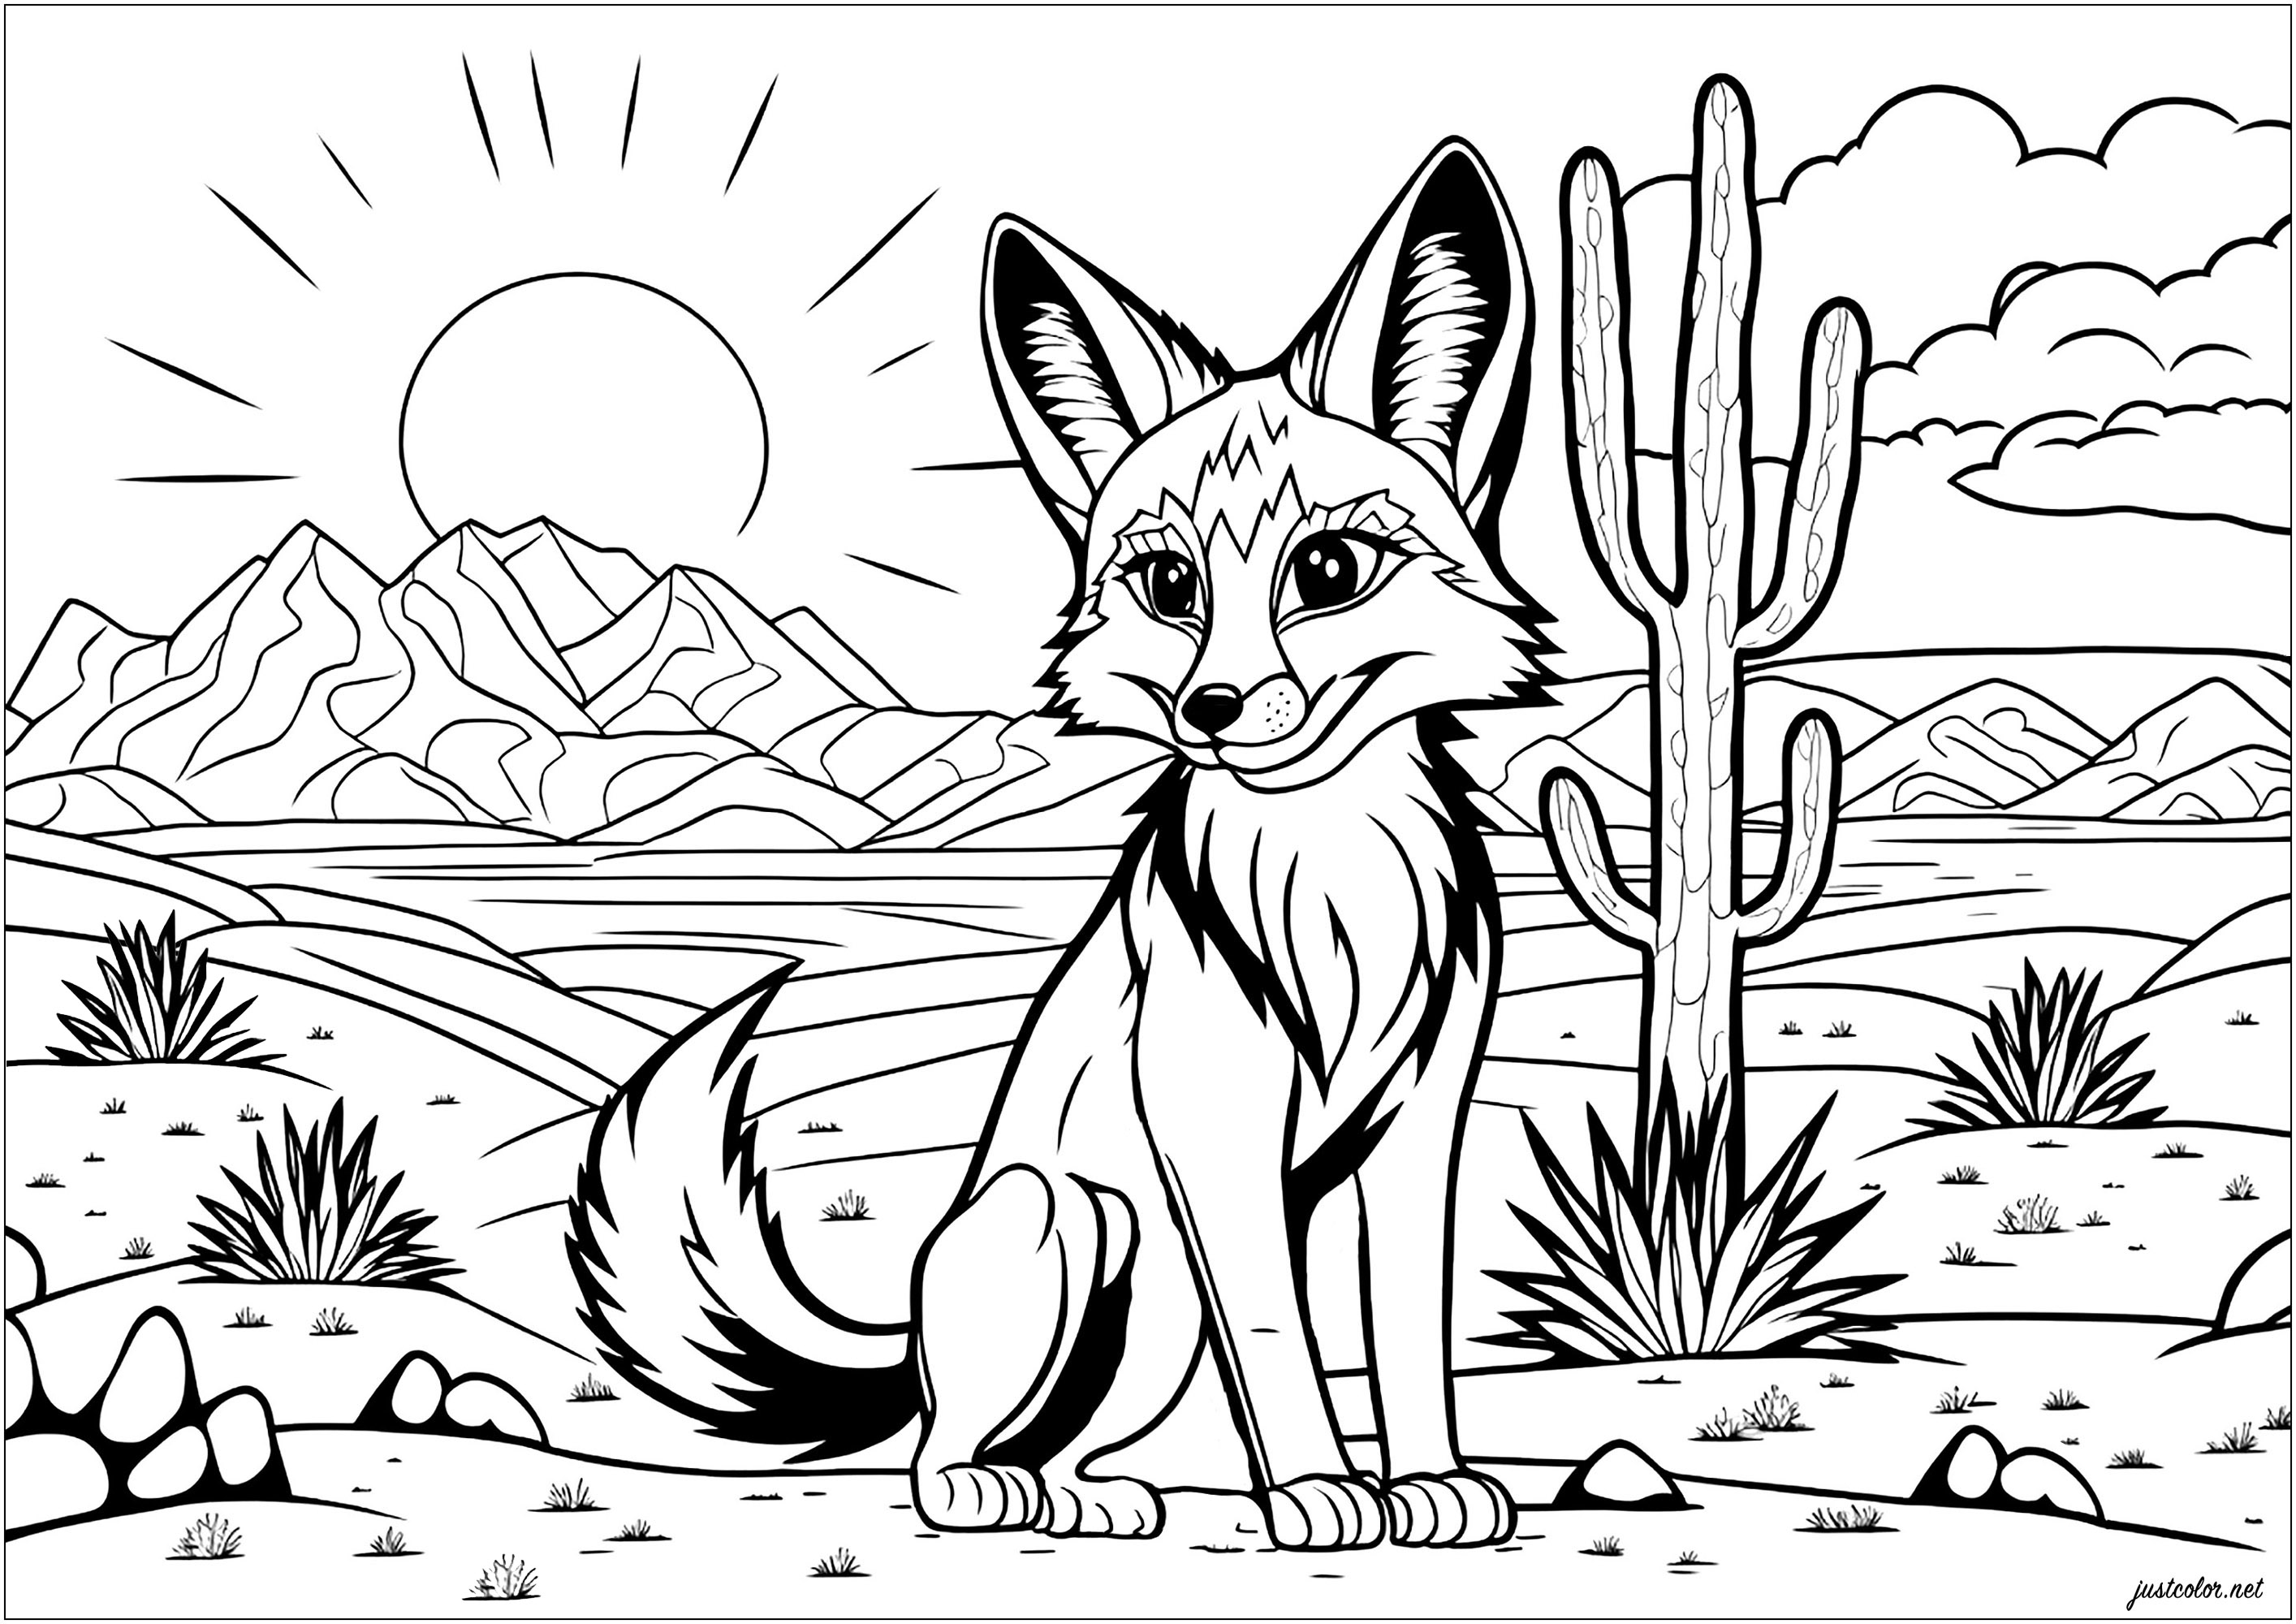 Ein majestätischer Fuchs in der trockenen Wüste. Das Ausmalen dieses Fuchses in der Wüste erweckt dieses einzigartige Tier mit leuchtenden Farben zum Leben und lässt dich erahnen, wie es sein könnte, Teil seiner wilden Welt zu sein.